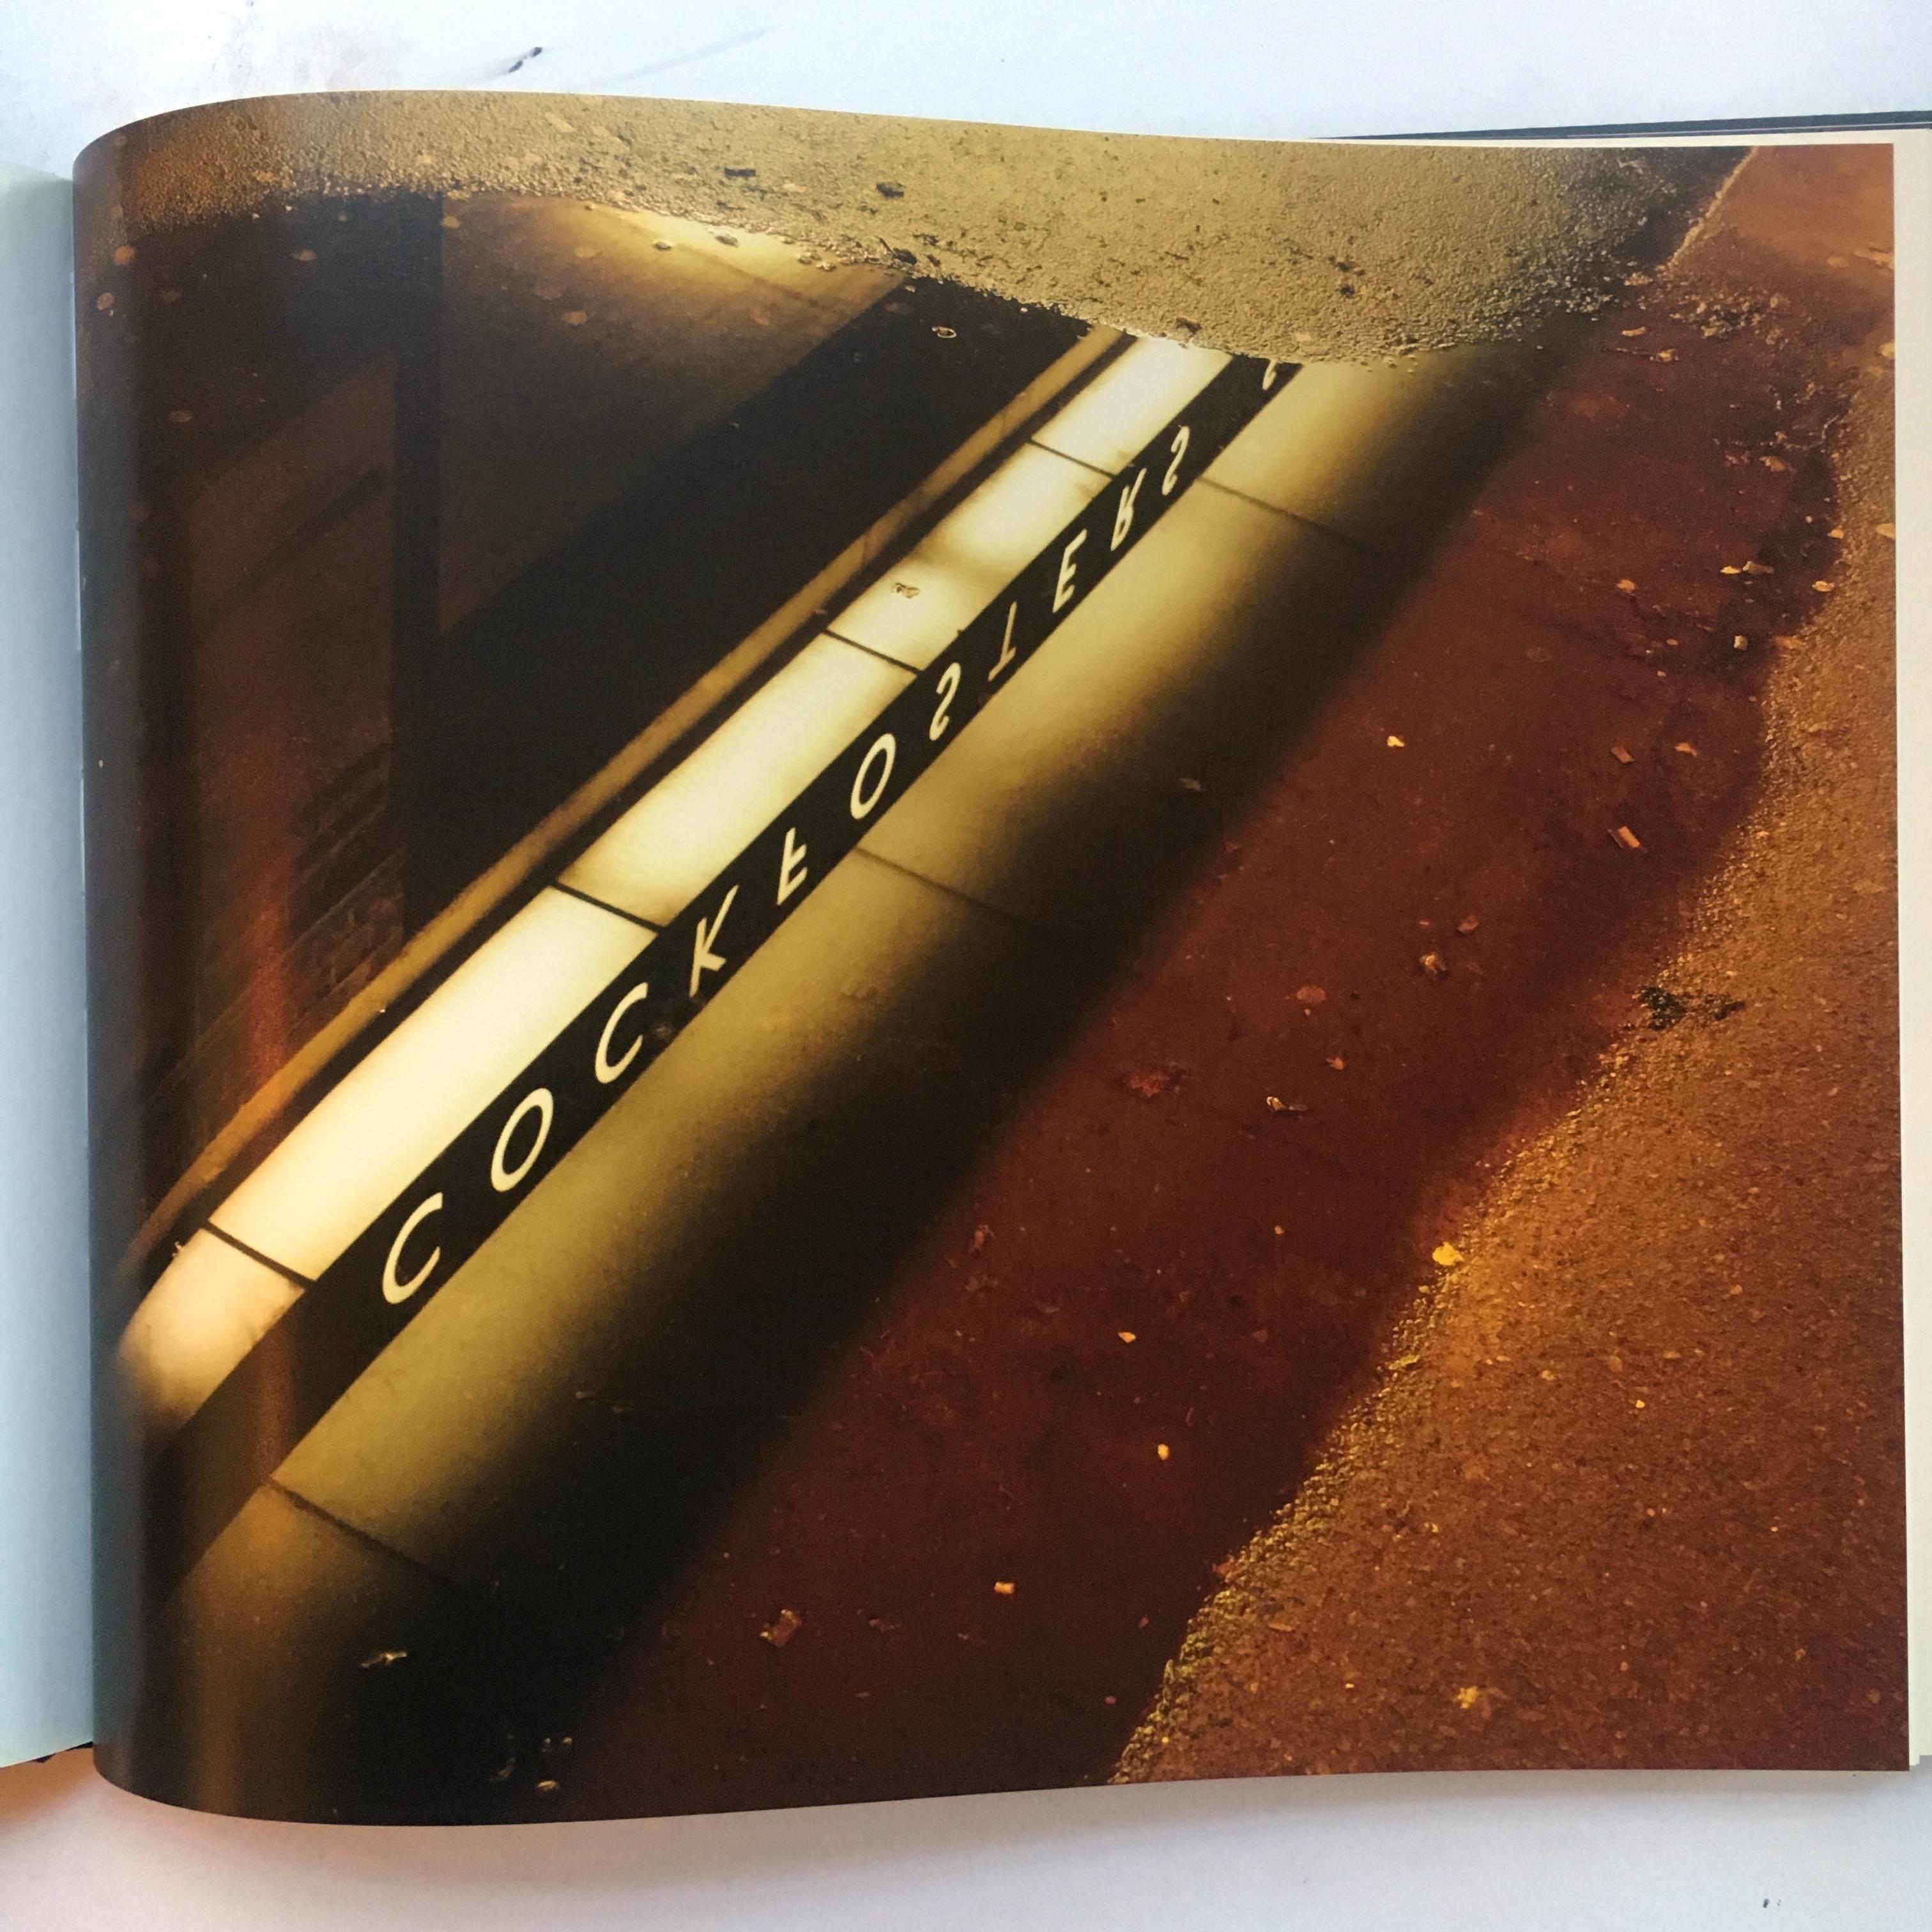 Erste Ausgabe, gebunden, veröffentlicht von Black Dog Publishing, London, 2009

Die Arbeiten der deutschen Fotografin Rut Blees Luxemburg sind unbestreitbar schön. Sie heben das Übersehene oder Verdunkelte im Stadtbild hervor, wobei die